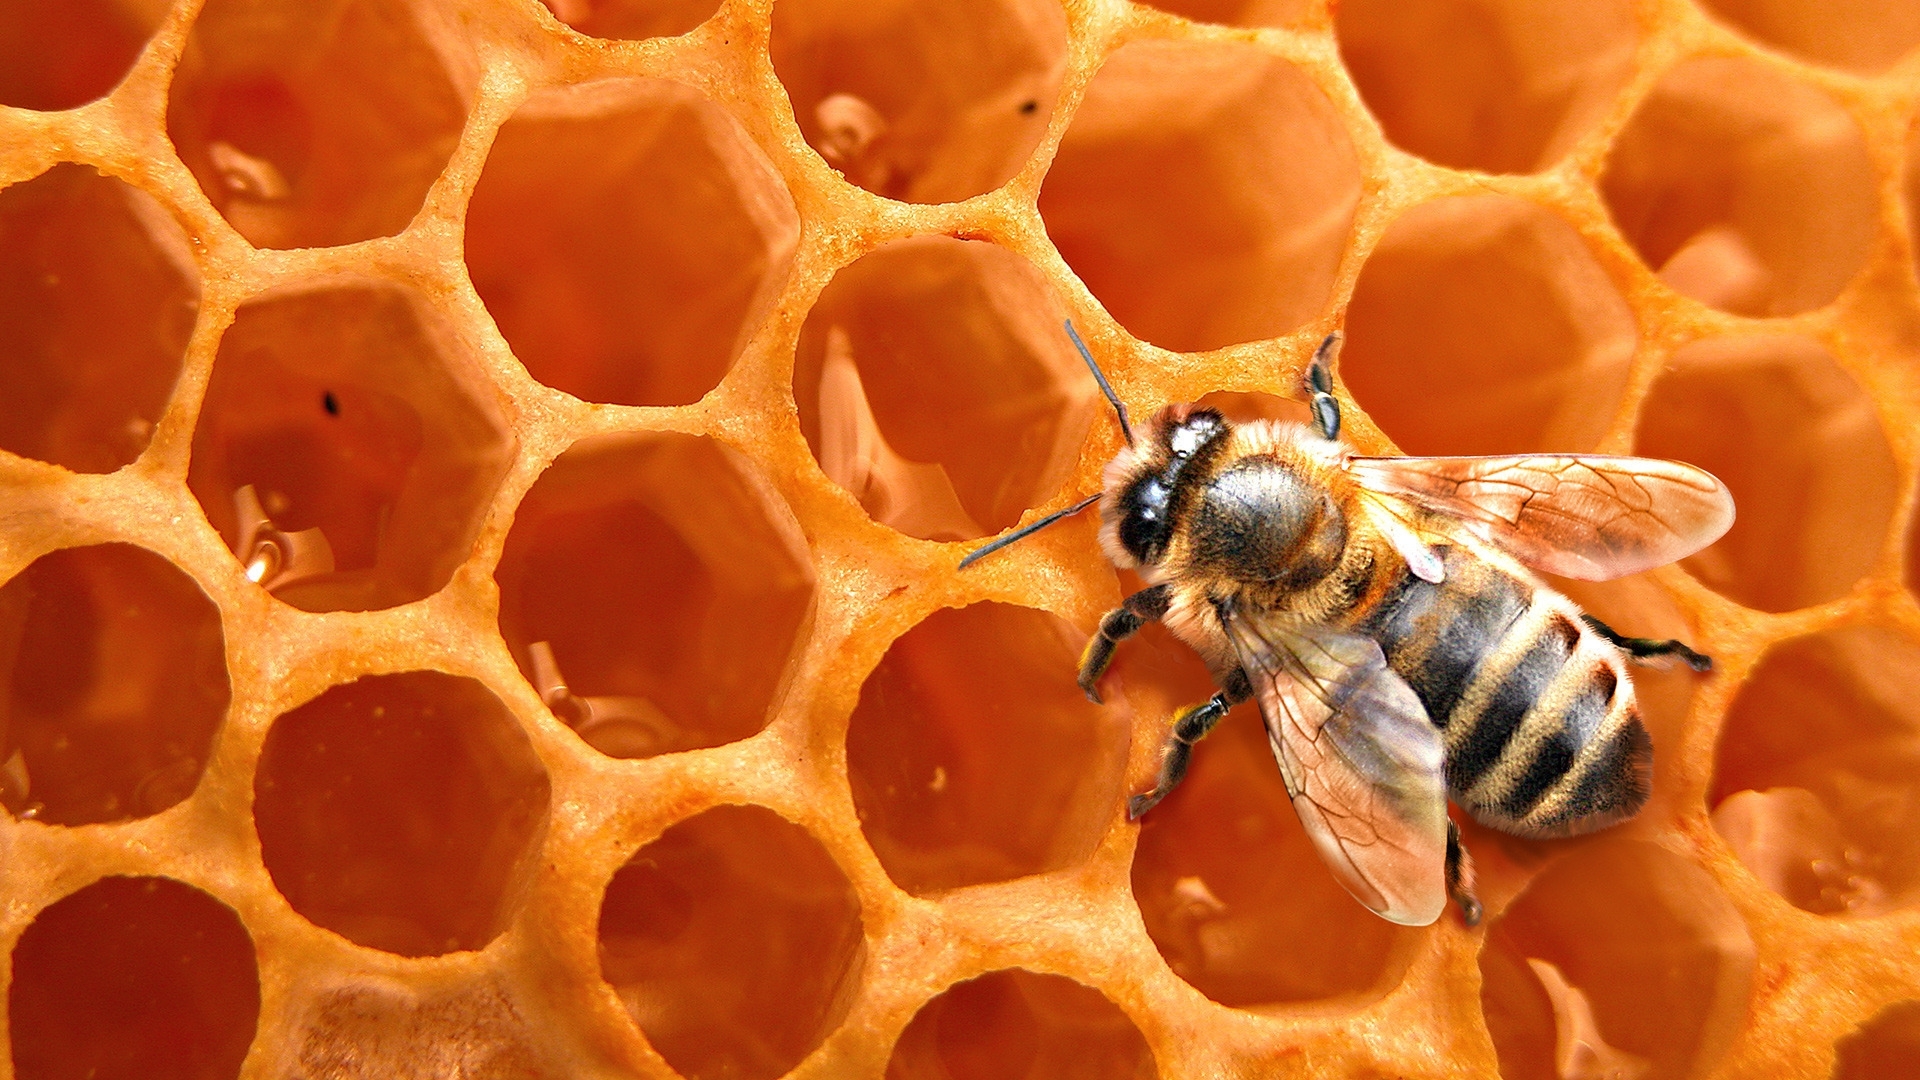 Популярные заставки и фоны Пчелы на компьютер